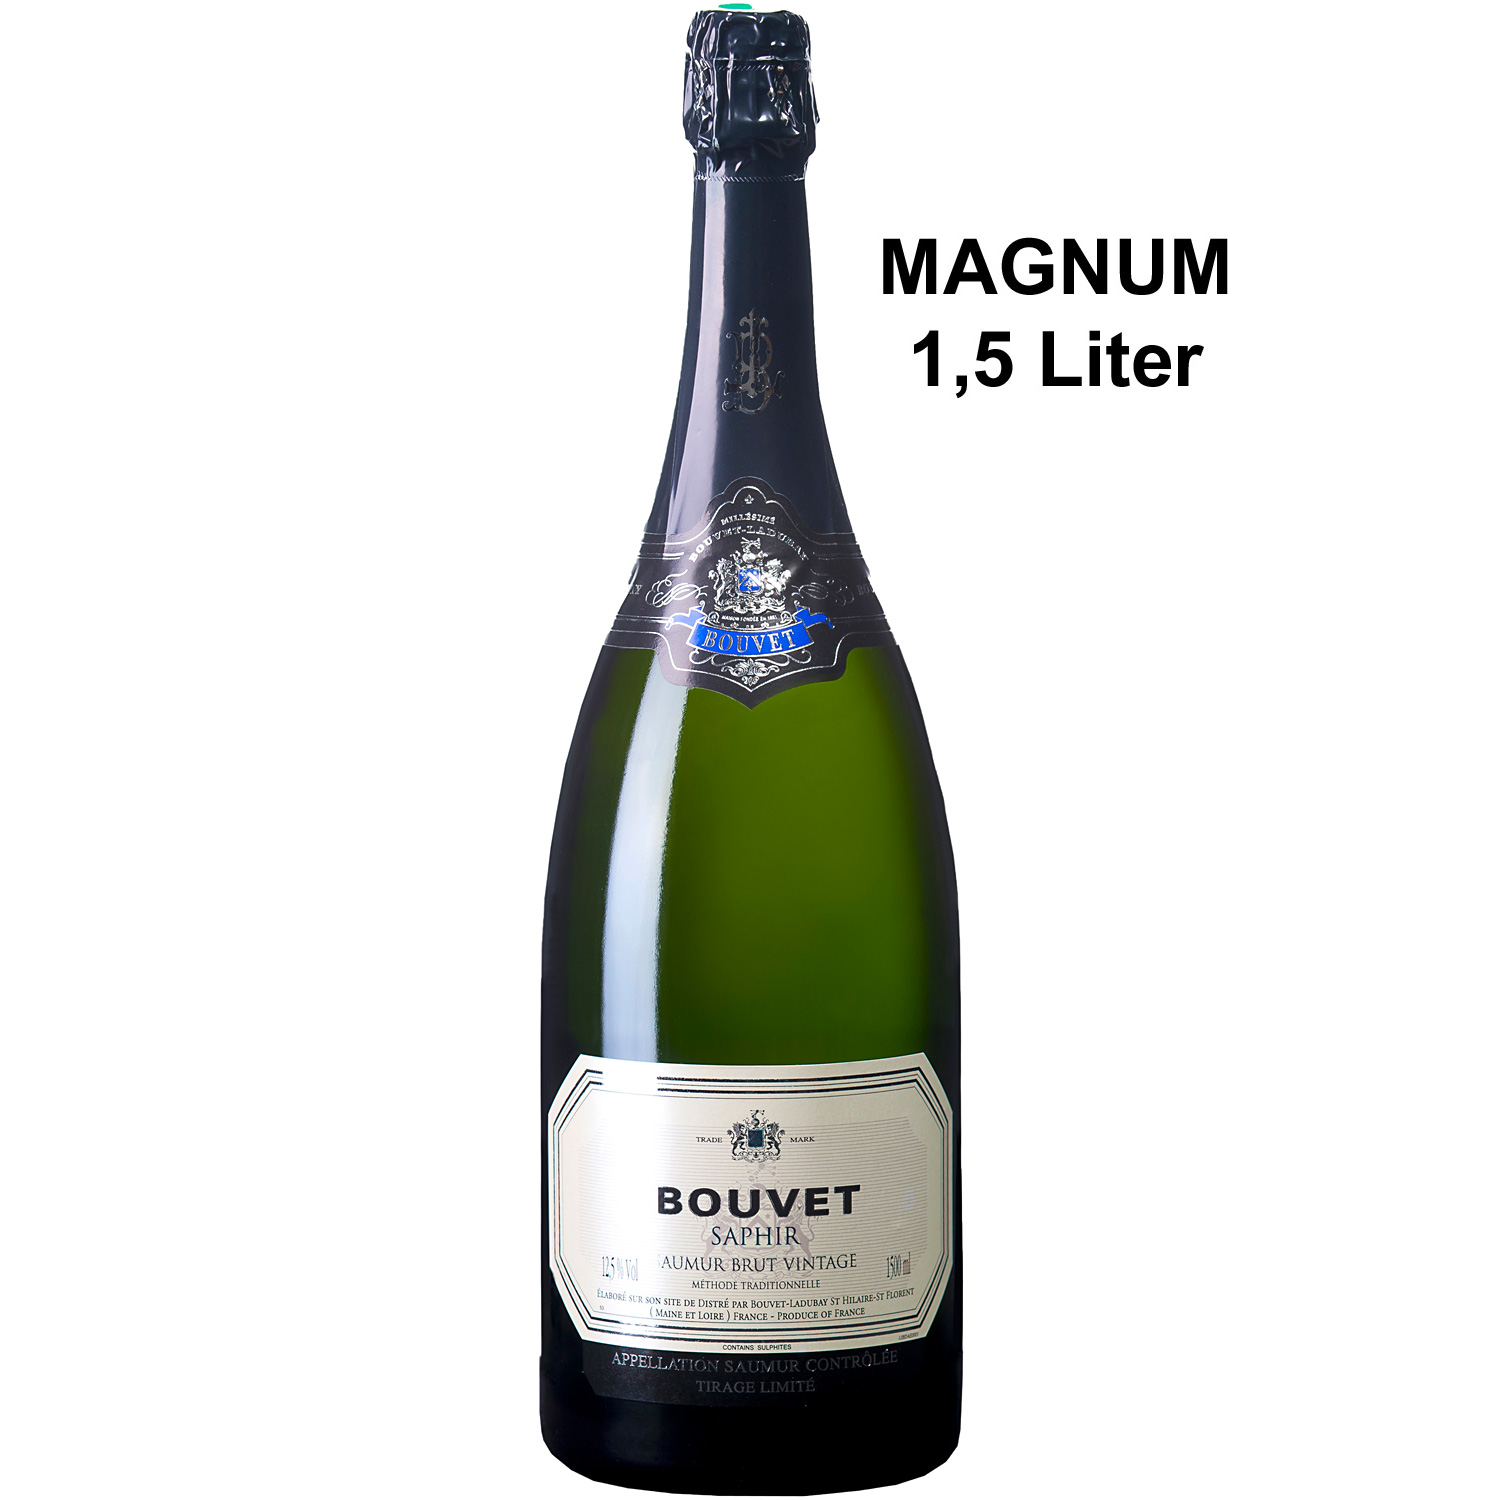 Bouvet Crémant Saumur Brut Blanc Saphir 2020 AOP Magnum